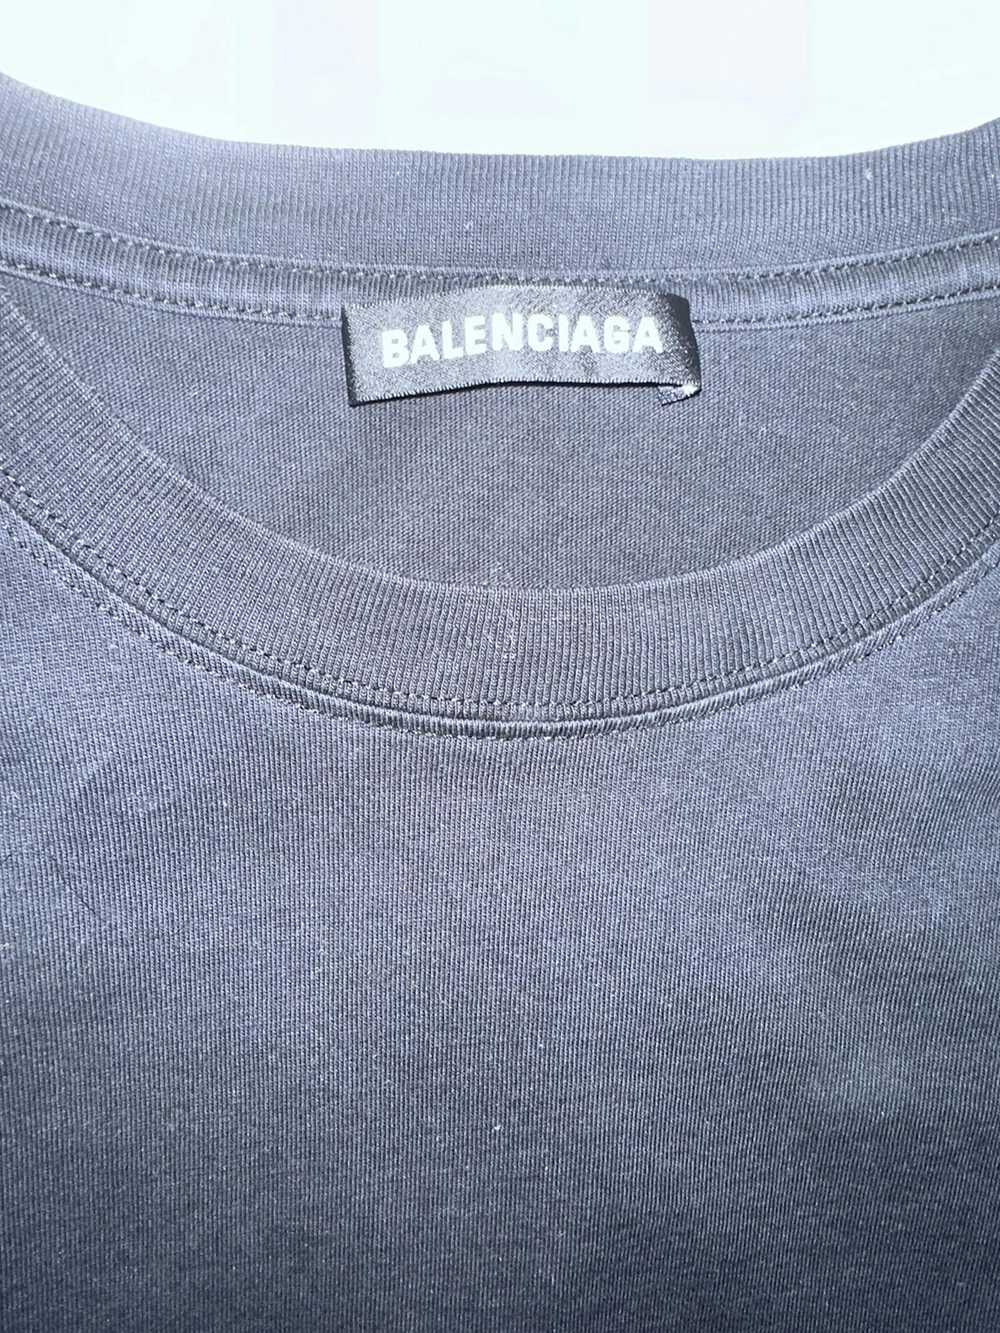 Balenciaga Balenciaga Campaign tee 🇺🇸 - image 3